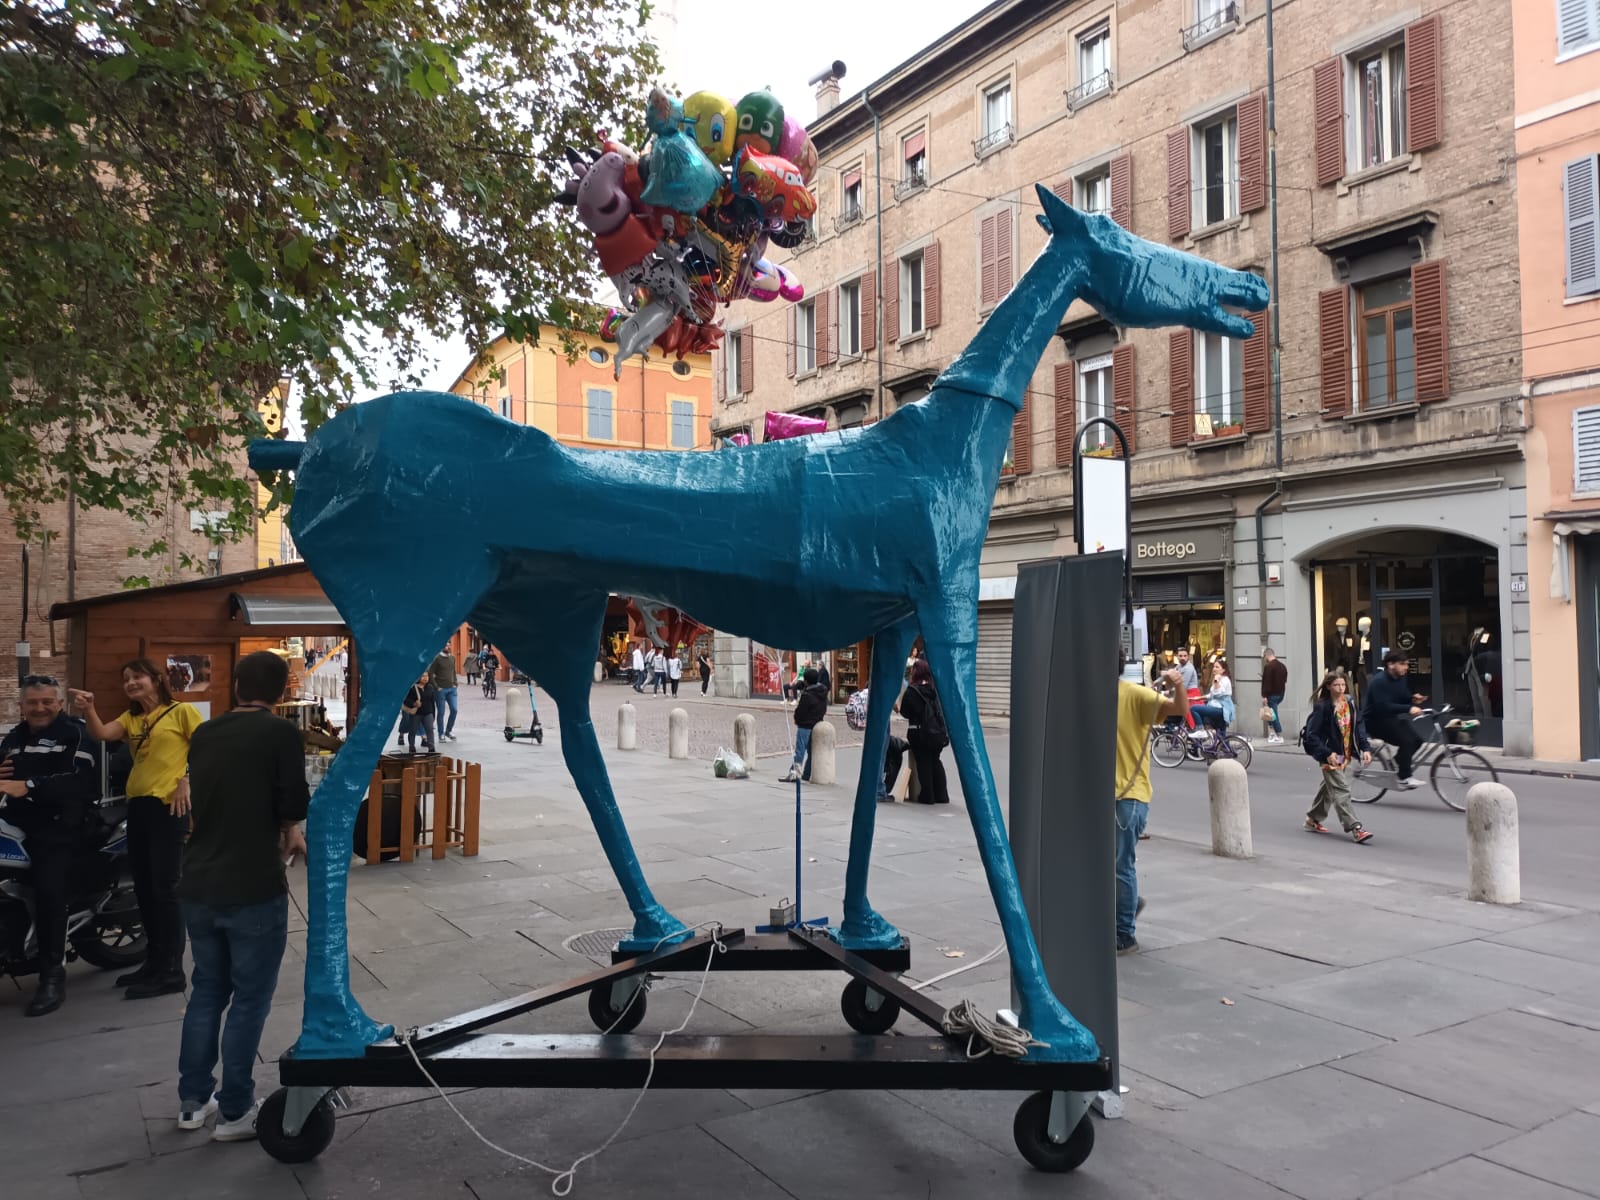 Una statua di un cavallo blu in una via cittadina, dietro ci sono dei palloncini